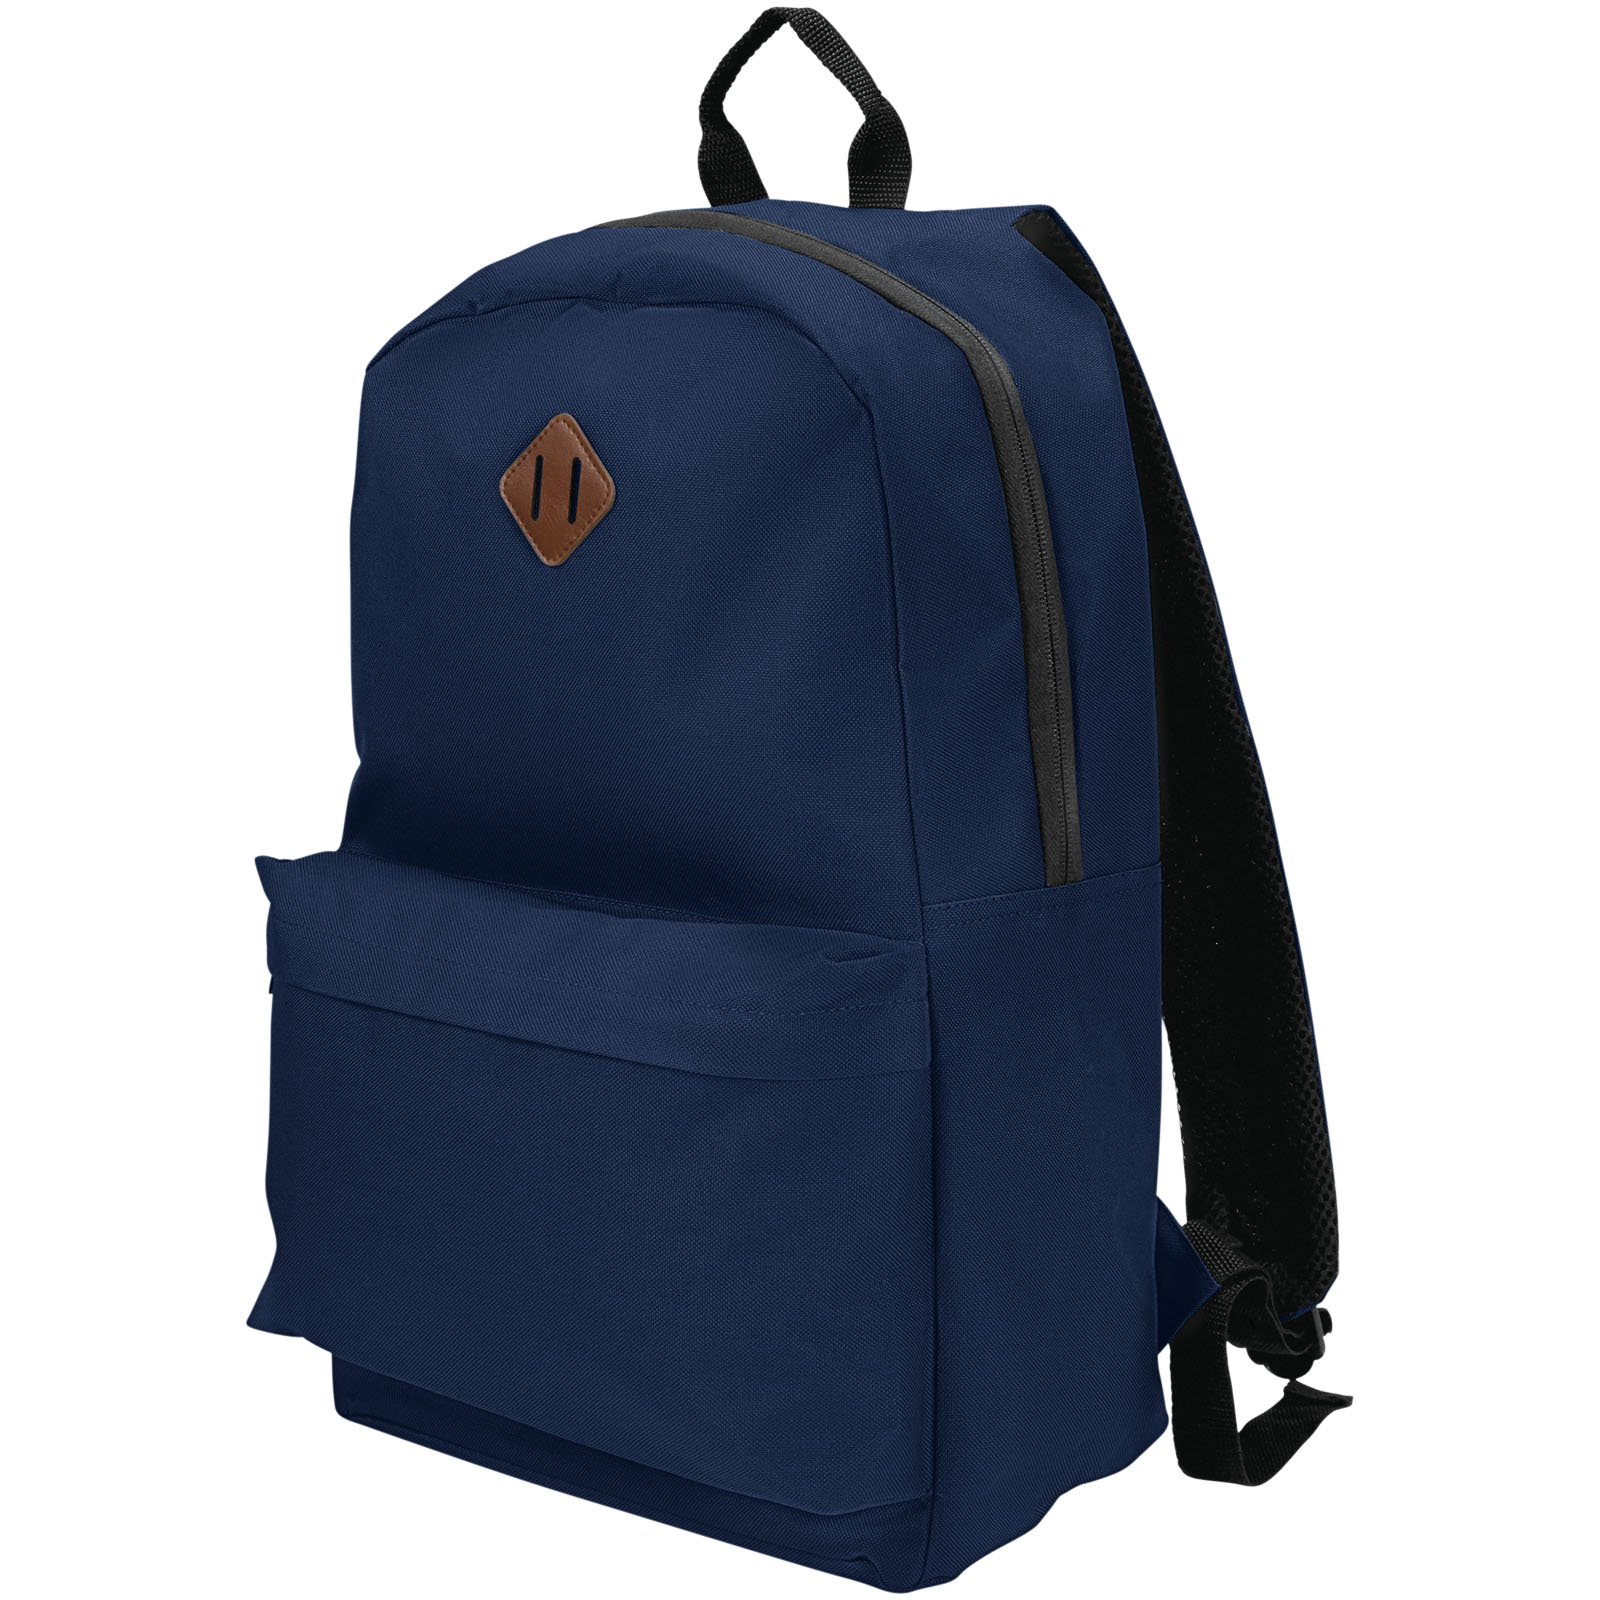 Advertising Laptop Backpacks - Stratta 15